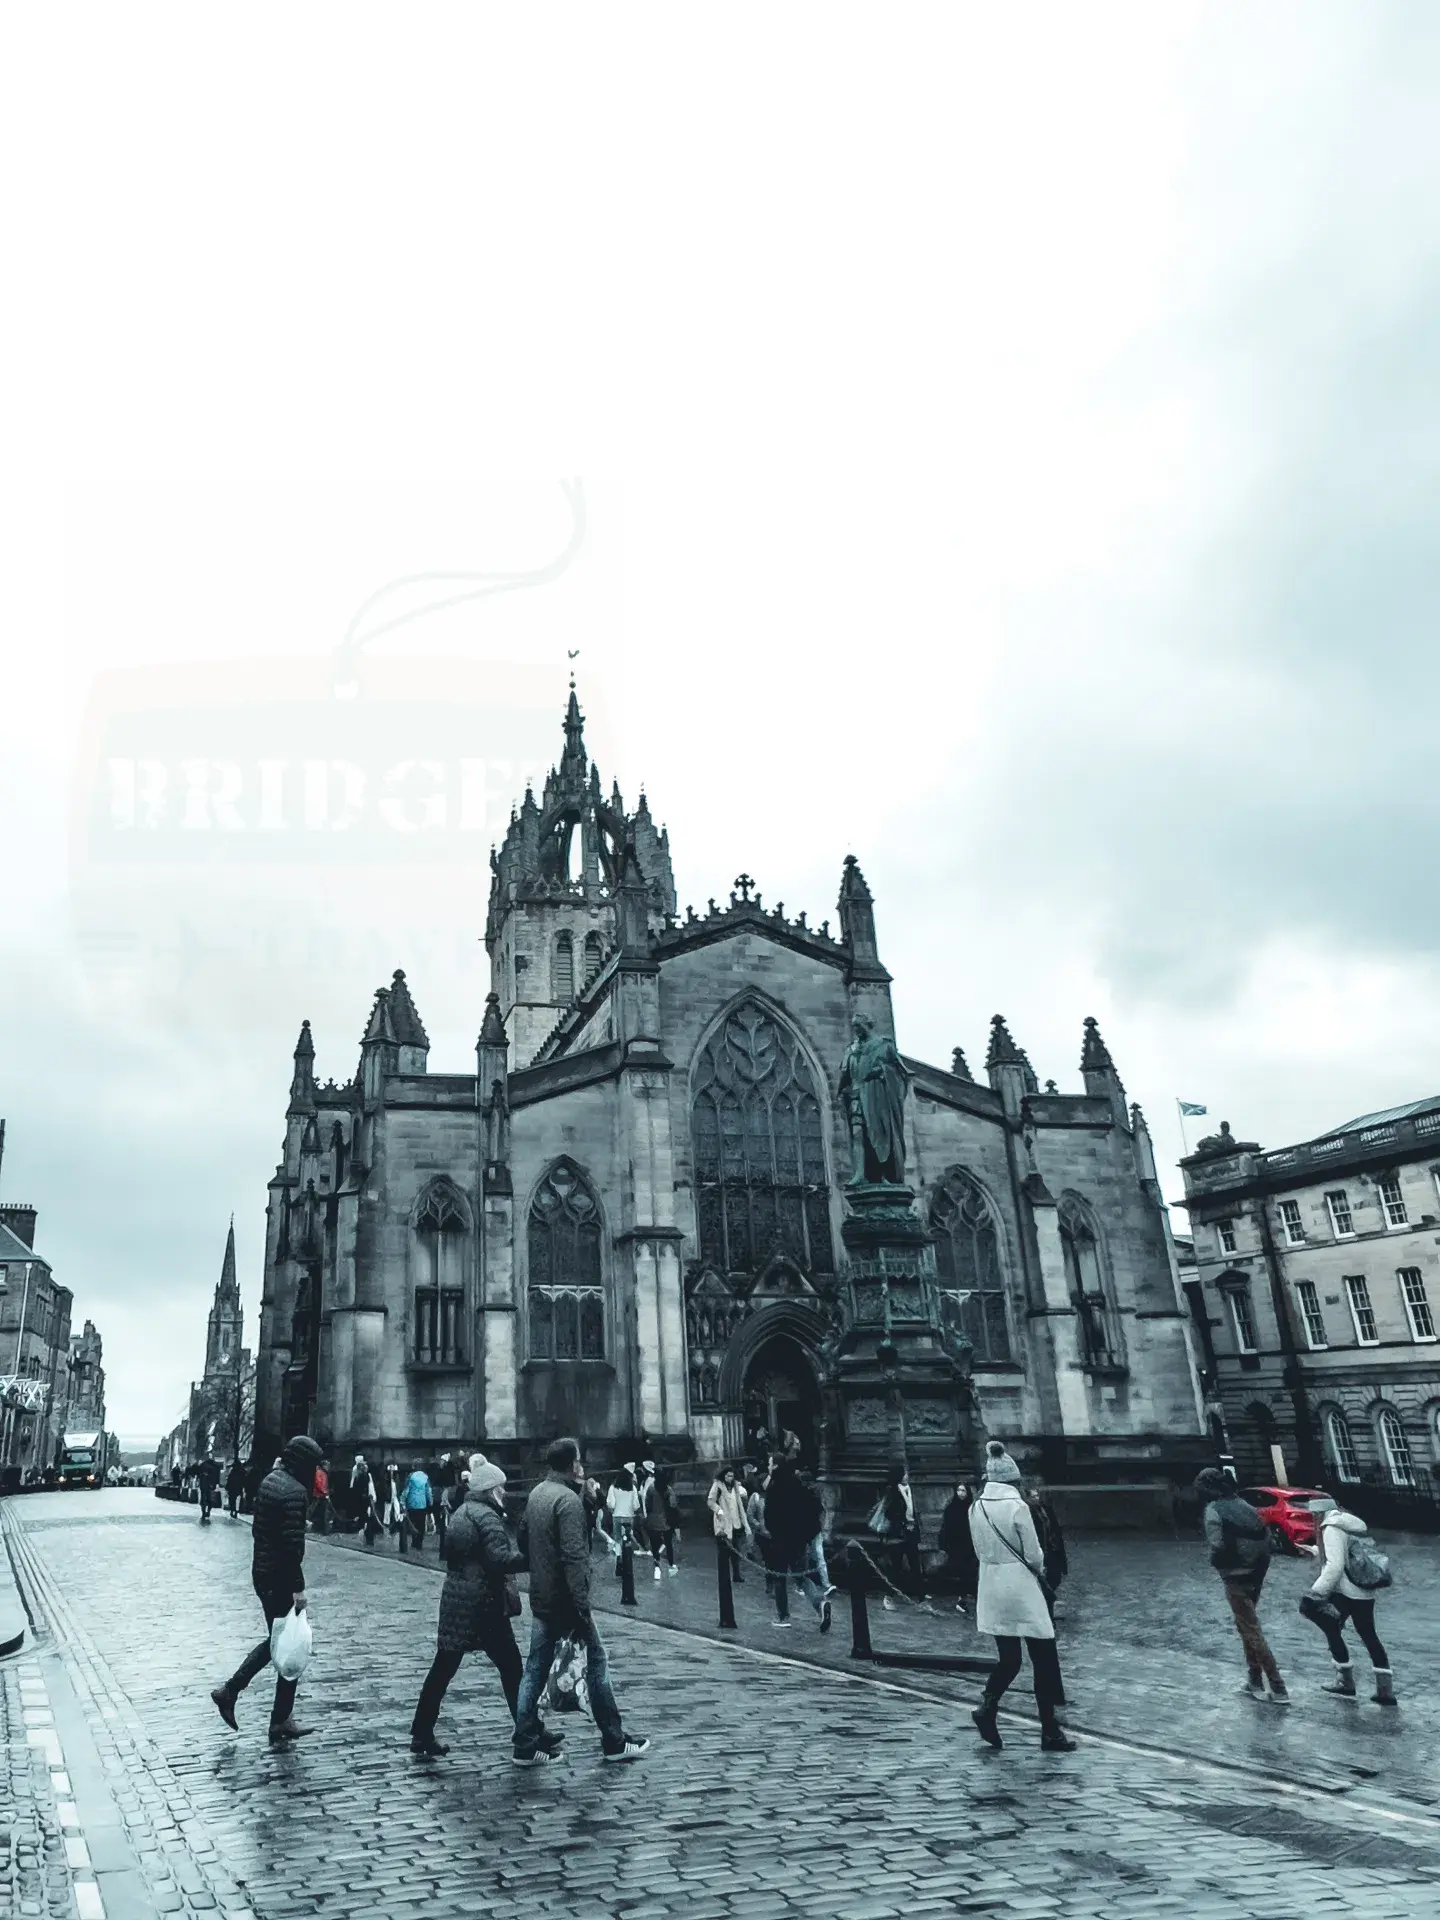 Katedra św. Idziego, Edynburg, Szkocja. Widok na budynek oraz plac przed Katedrą.